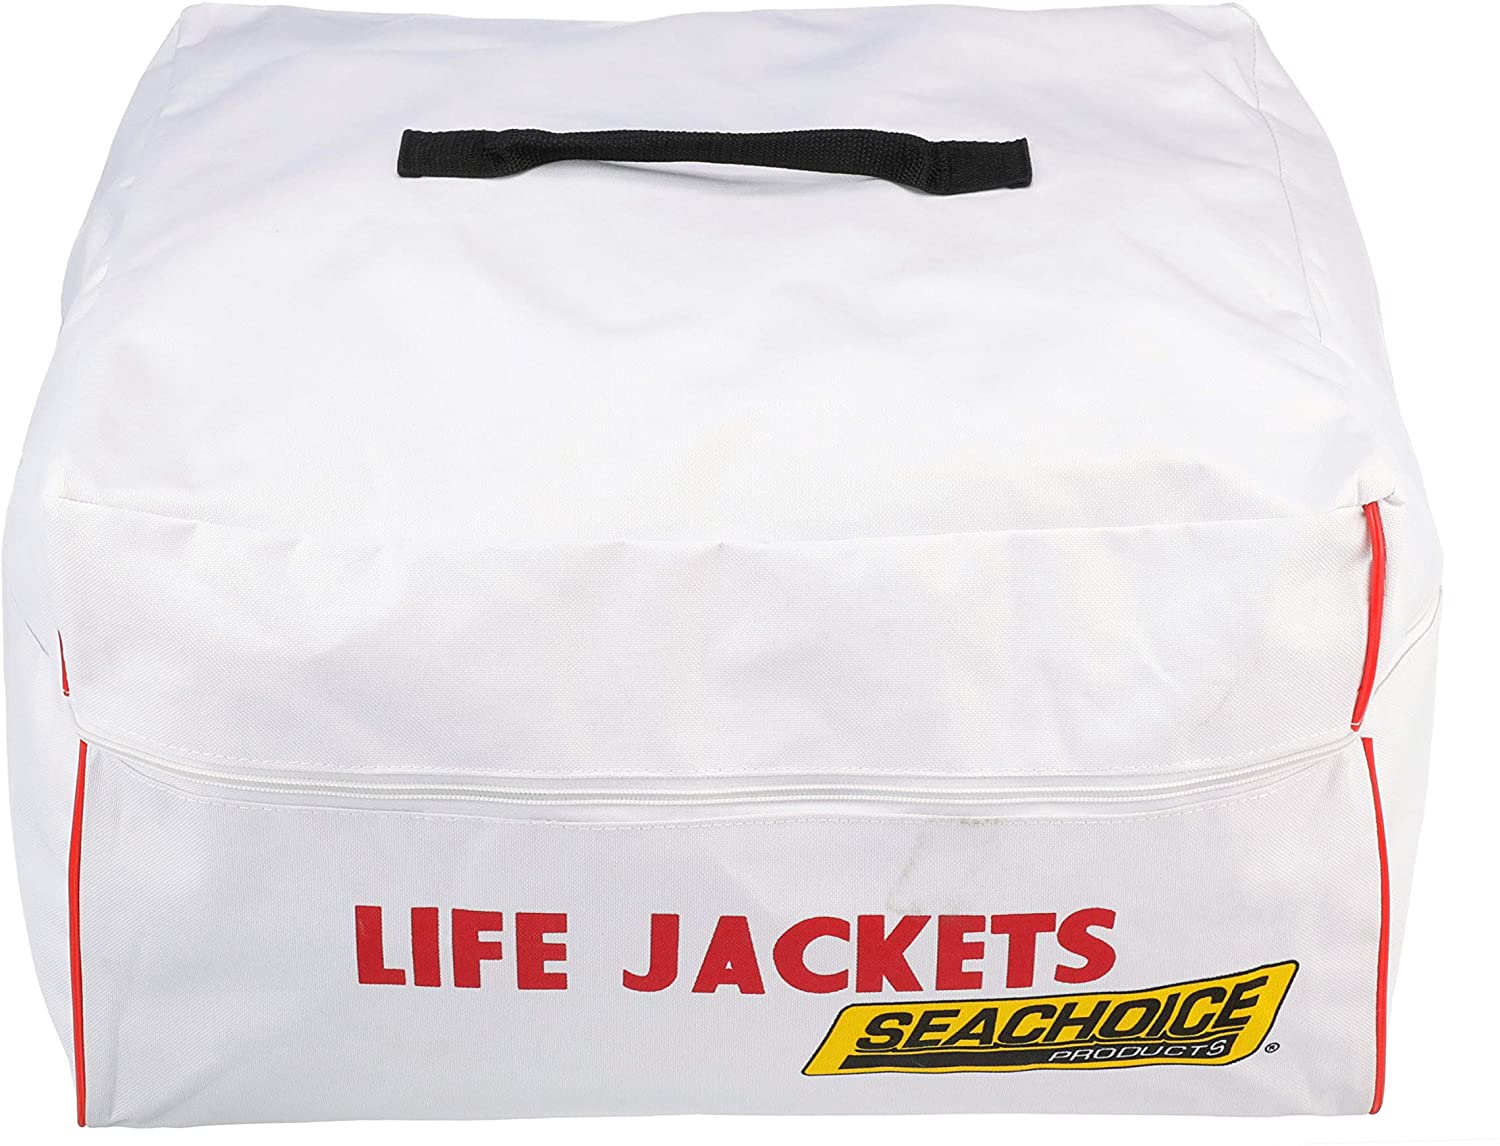 lifejacket bag, Seachoice lifejacket bag